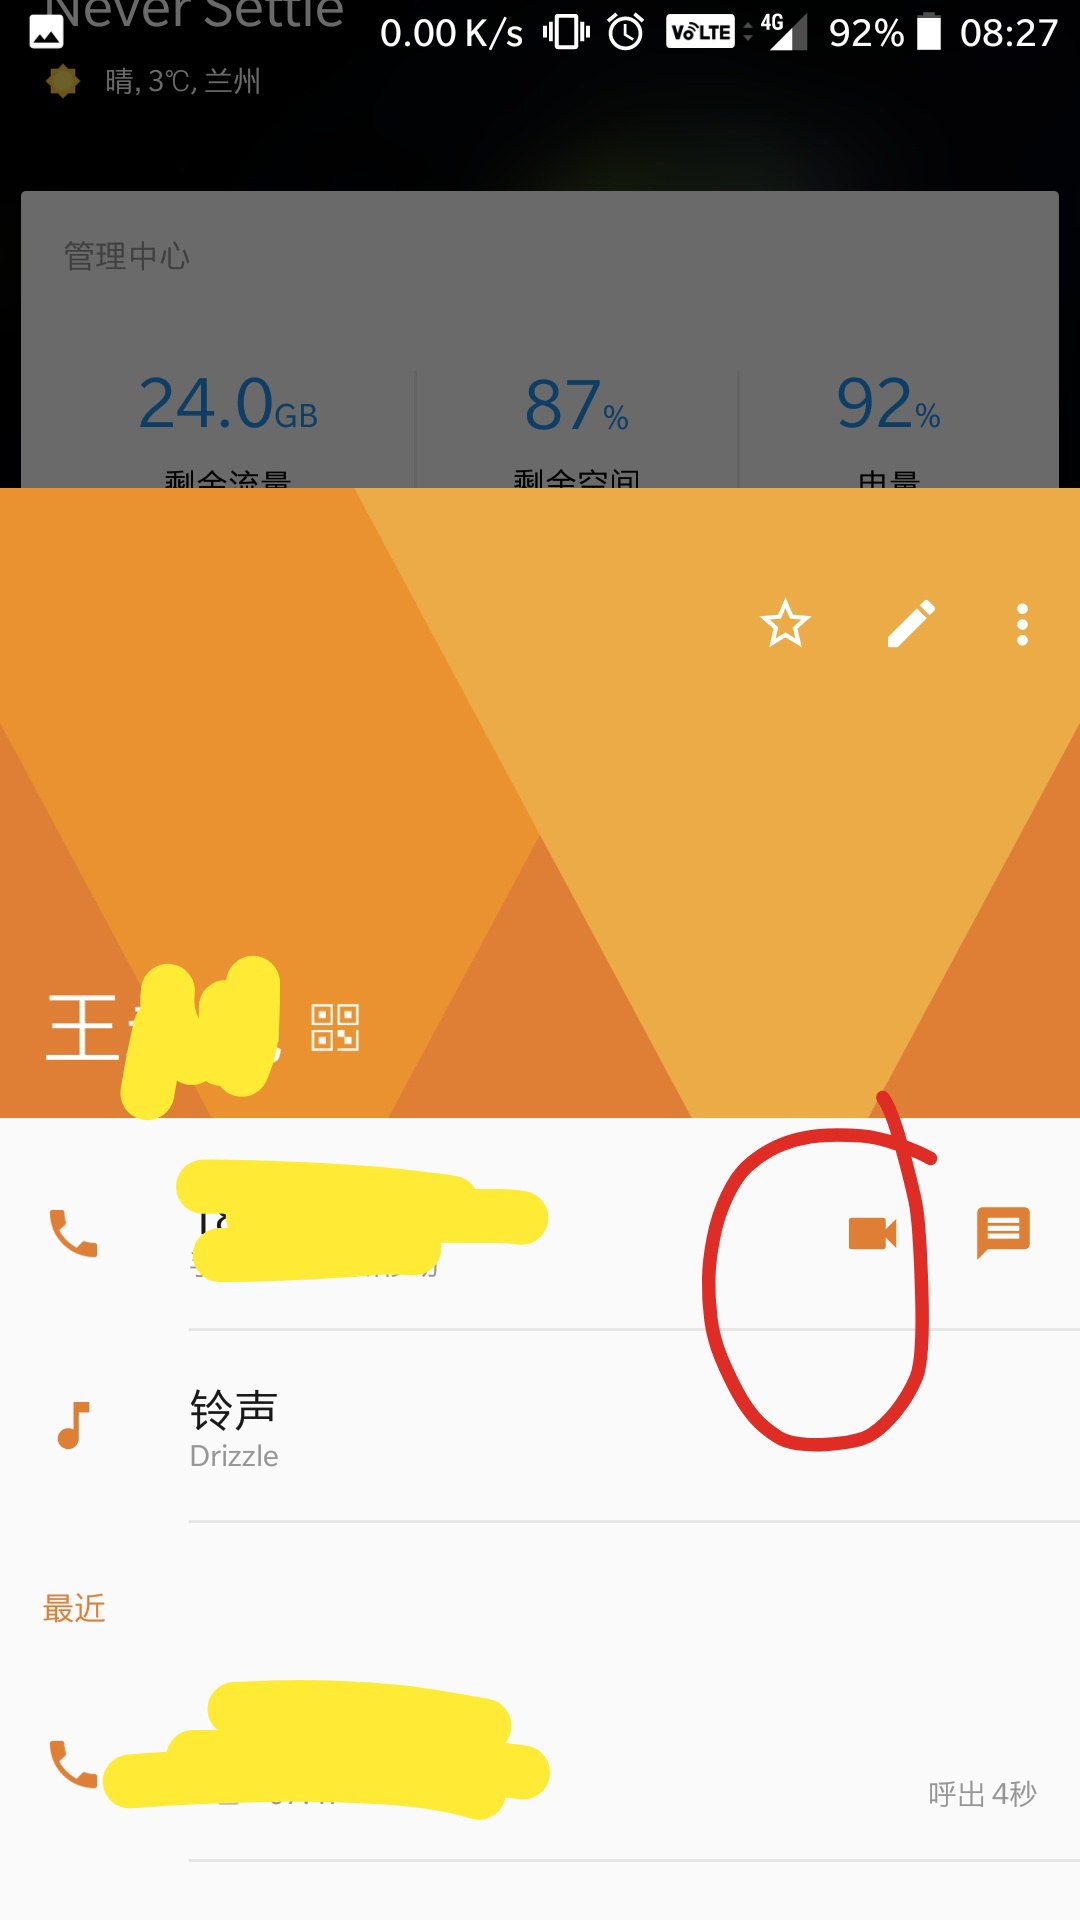 whatsapp中文手机版_中文版手机SDR软件_中文版手机电子琴软件